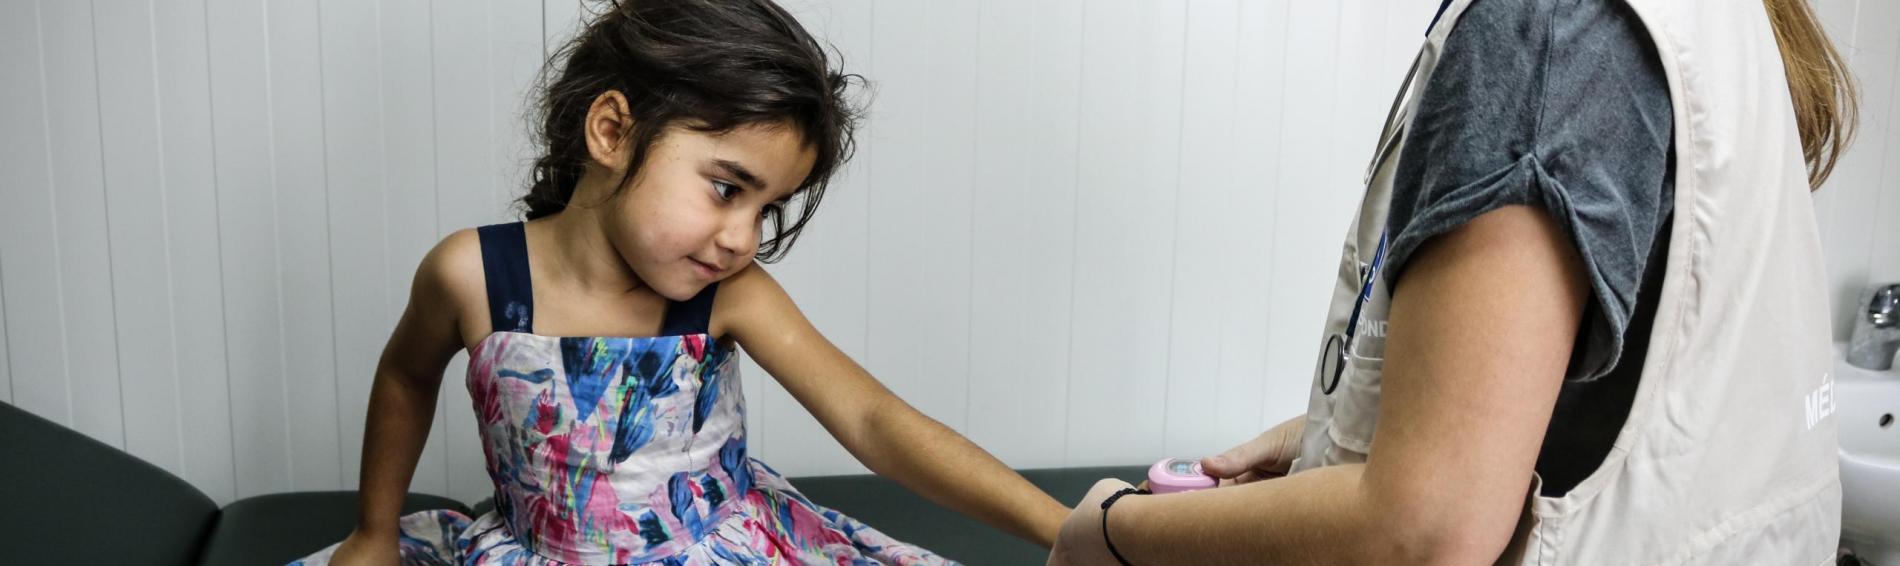 Een Syrisch meisje in kleurrijke jurk met bloemetjes zit op een dokterstafel in een Grieks vluchtelingenkamp. De Griekse kinderdokter van Dokters van de Wereld meet haar bloeddruk.